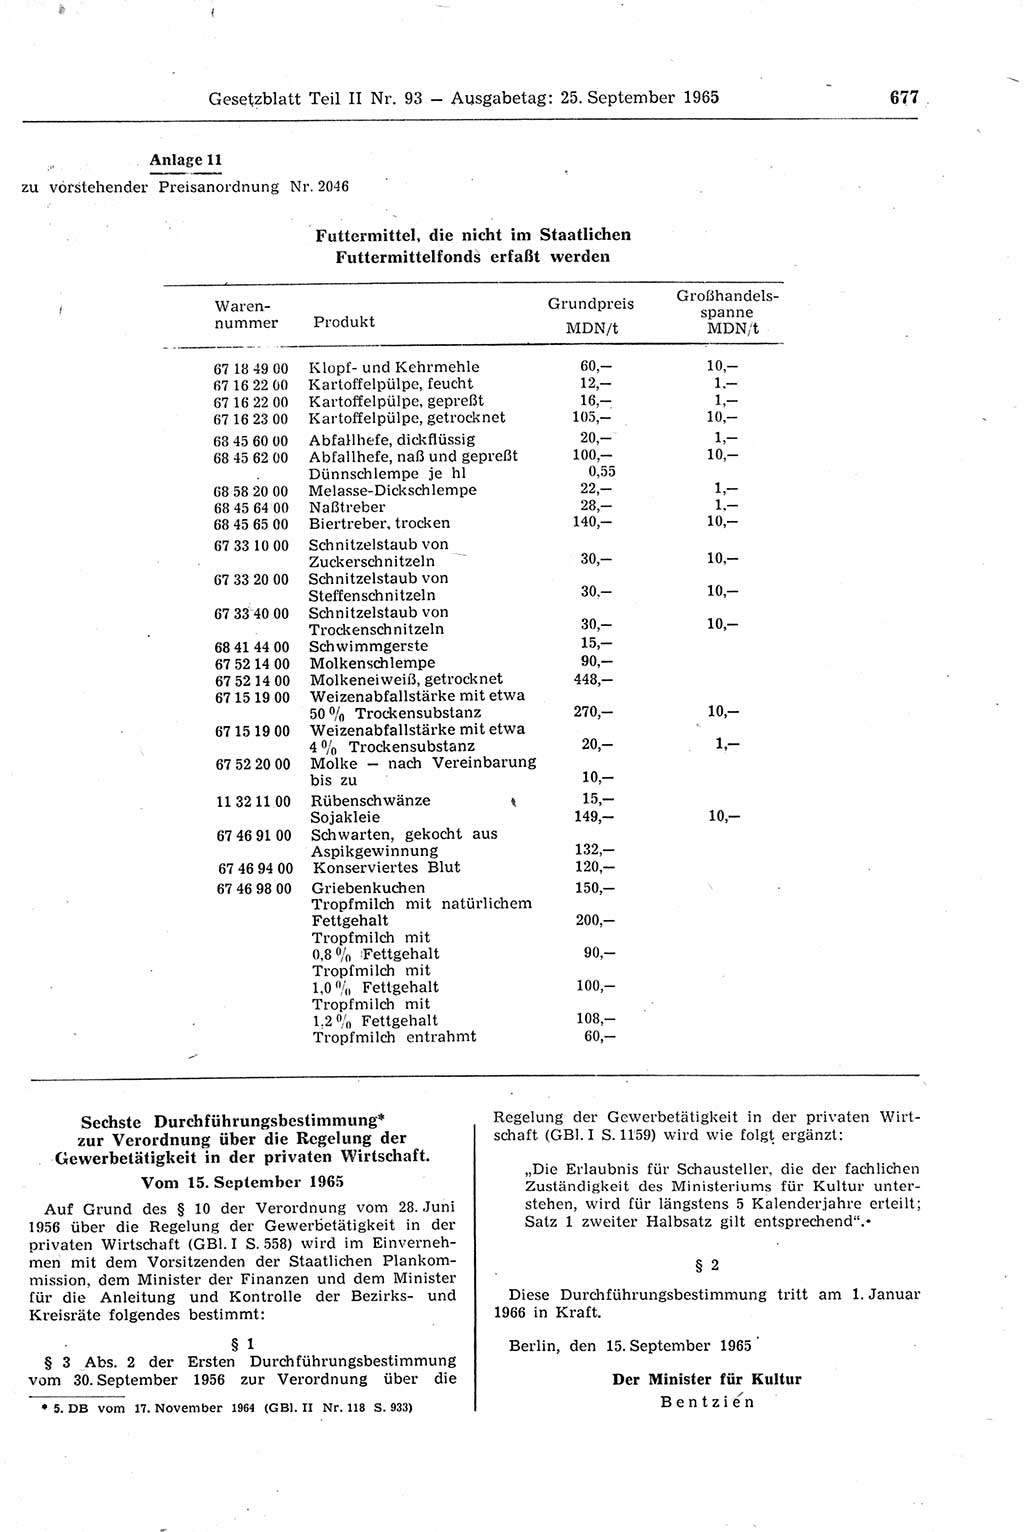 Gesetzblatt (GBl.) der Deutschen Demokratischen Republik (DDR) Teil ⅠⅠ 1965, Seite 677 (GBl. DDR ⅠⅠ 1965, S. 677)